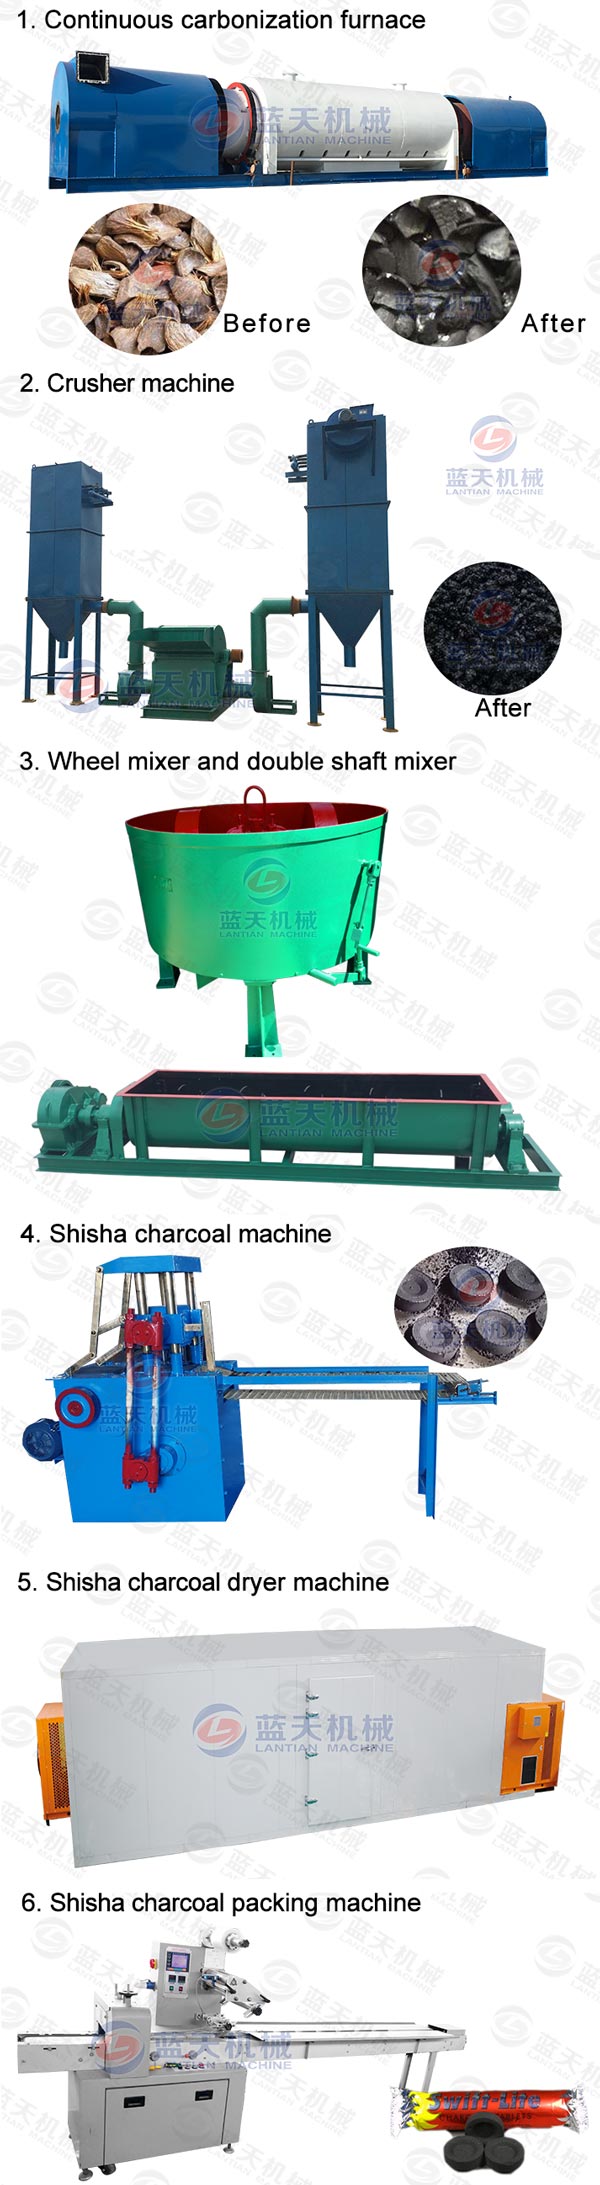 shisha charcoal pressing machine